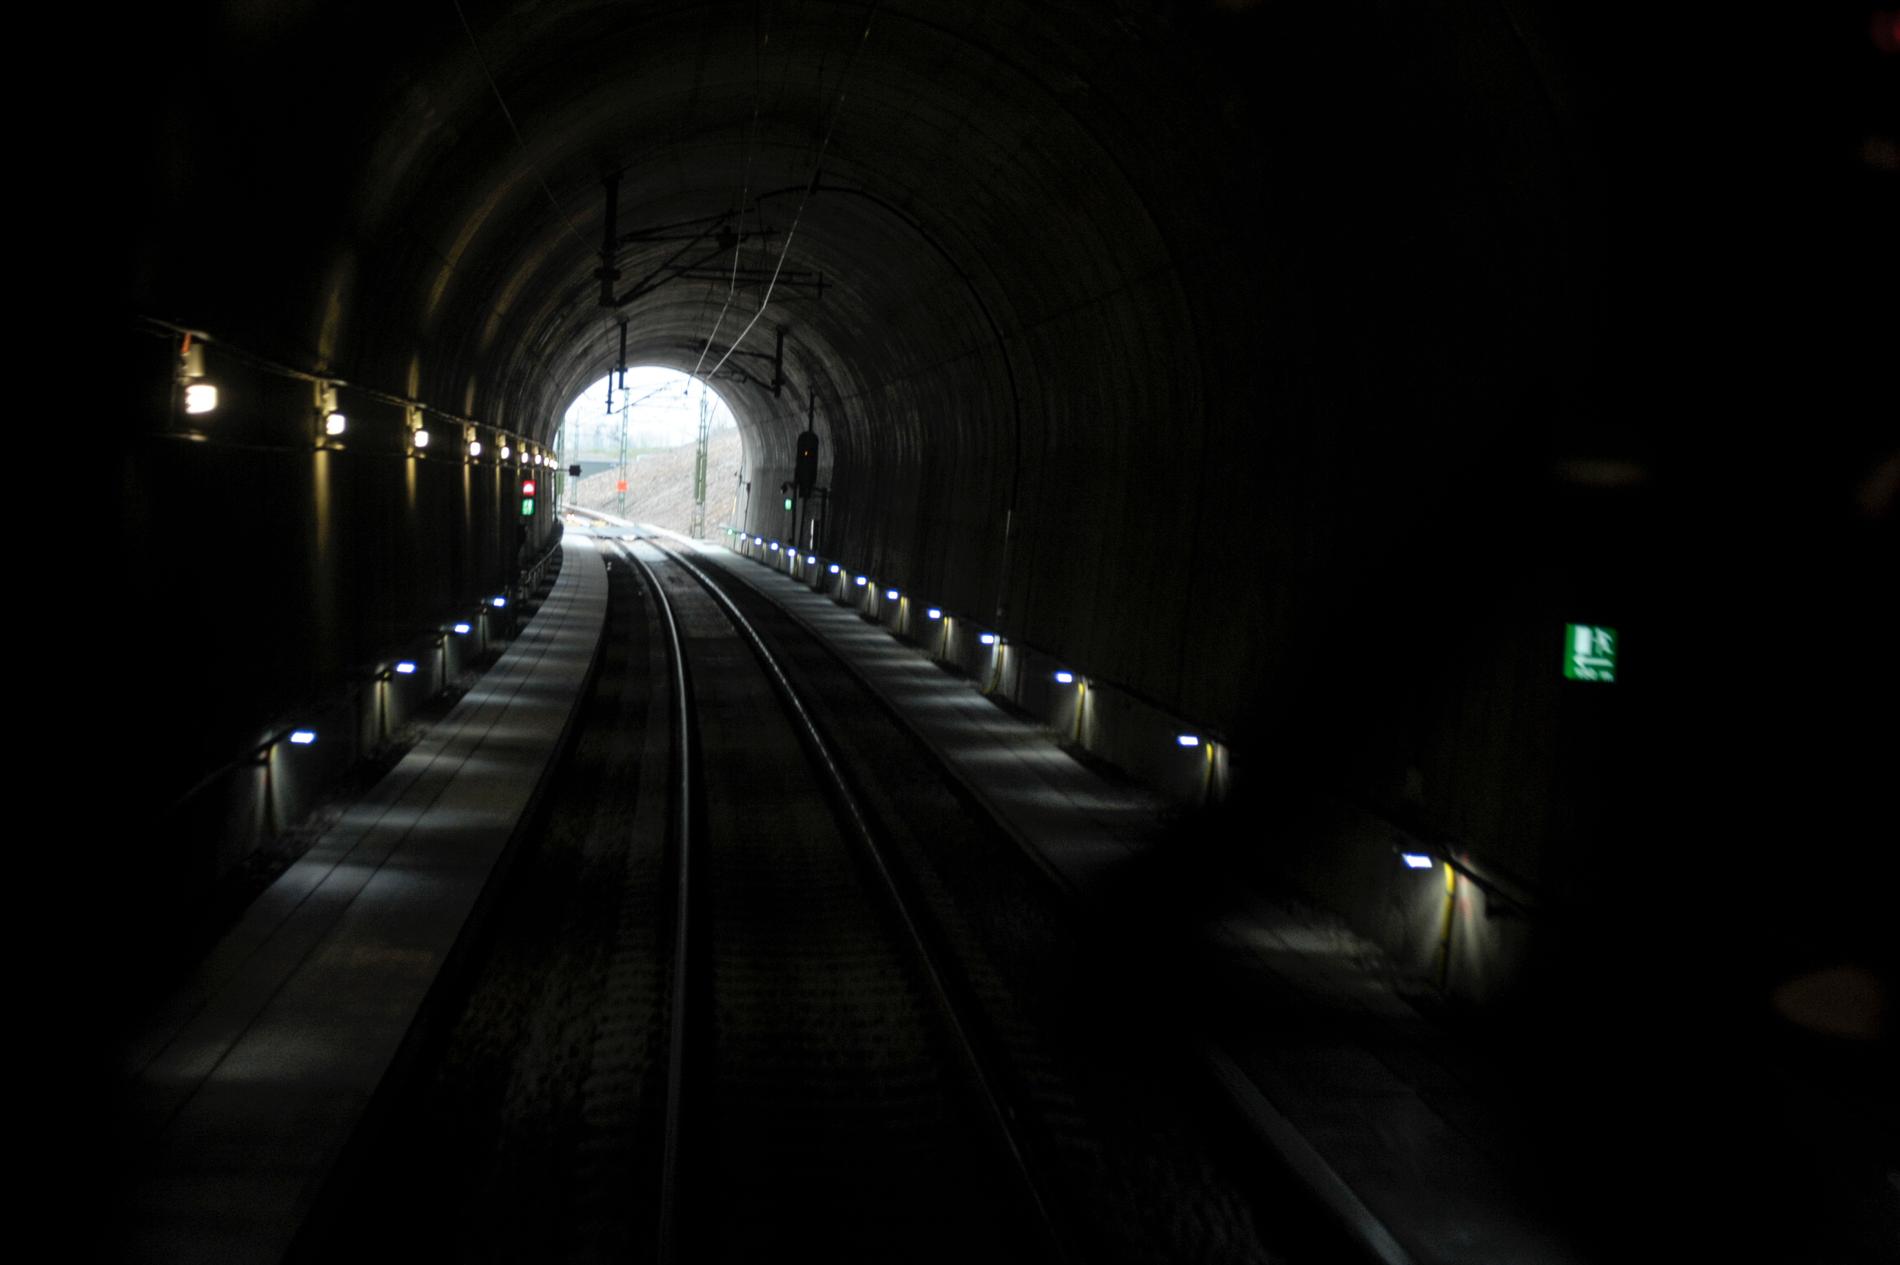 Hallandsåstunneln togs i bruk 2015 – 18 år försenad. Arkivbild.